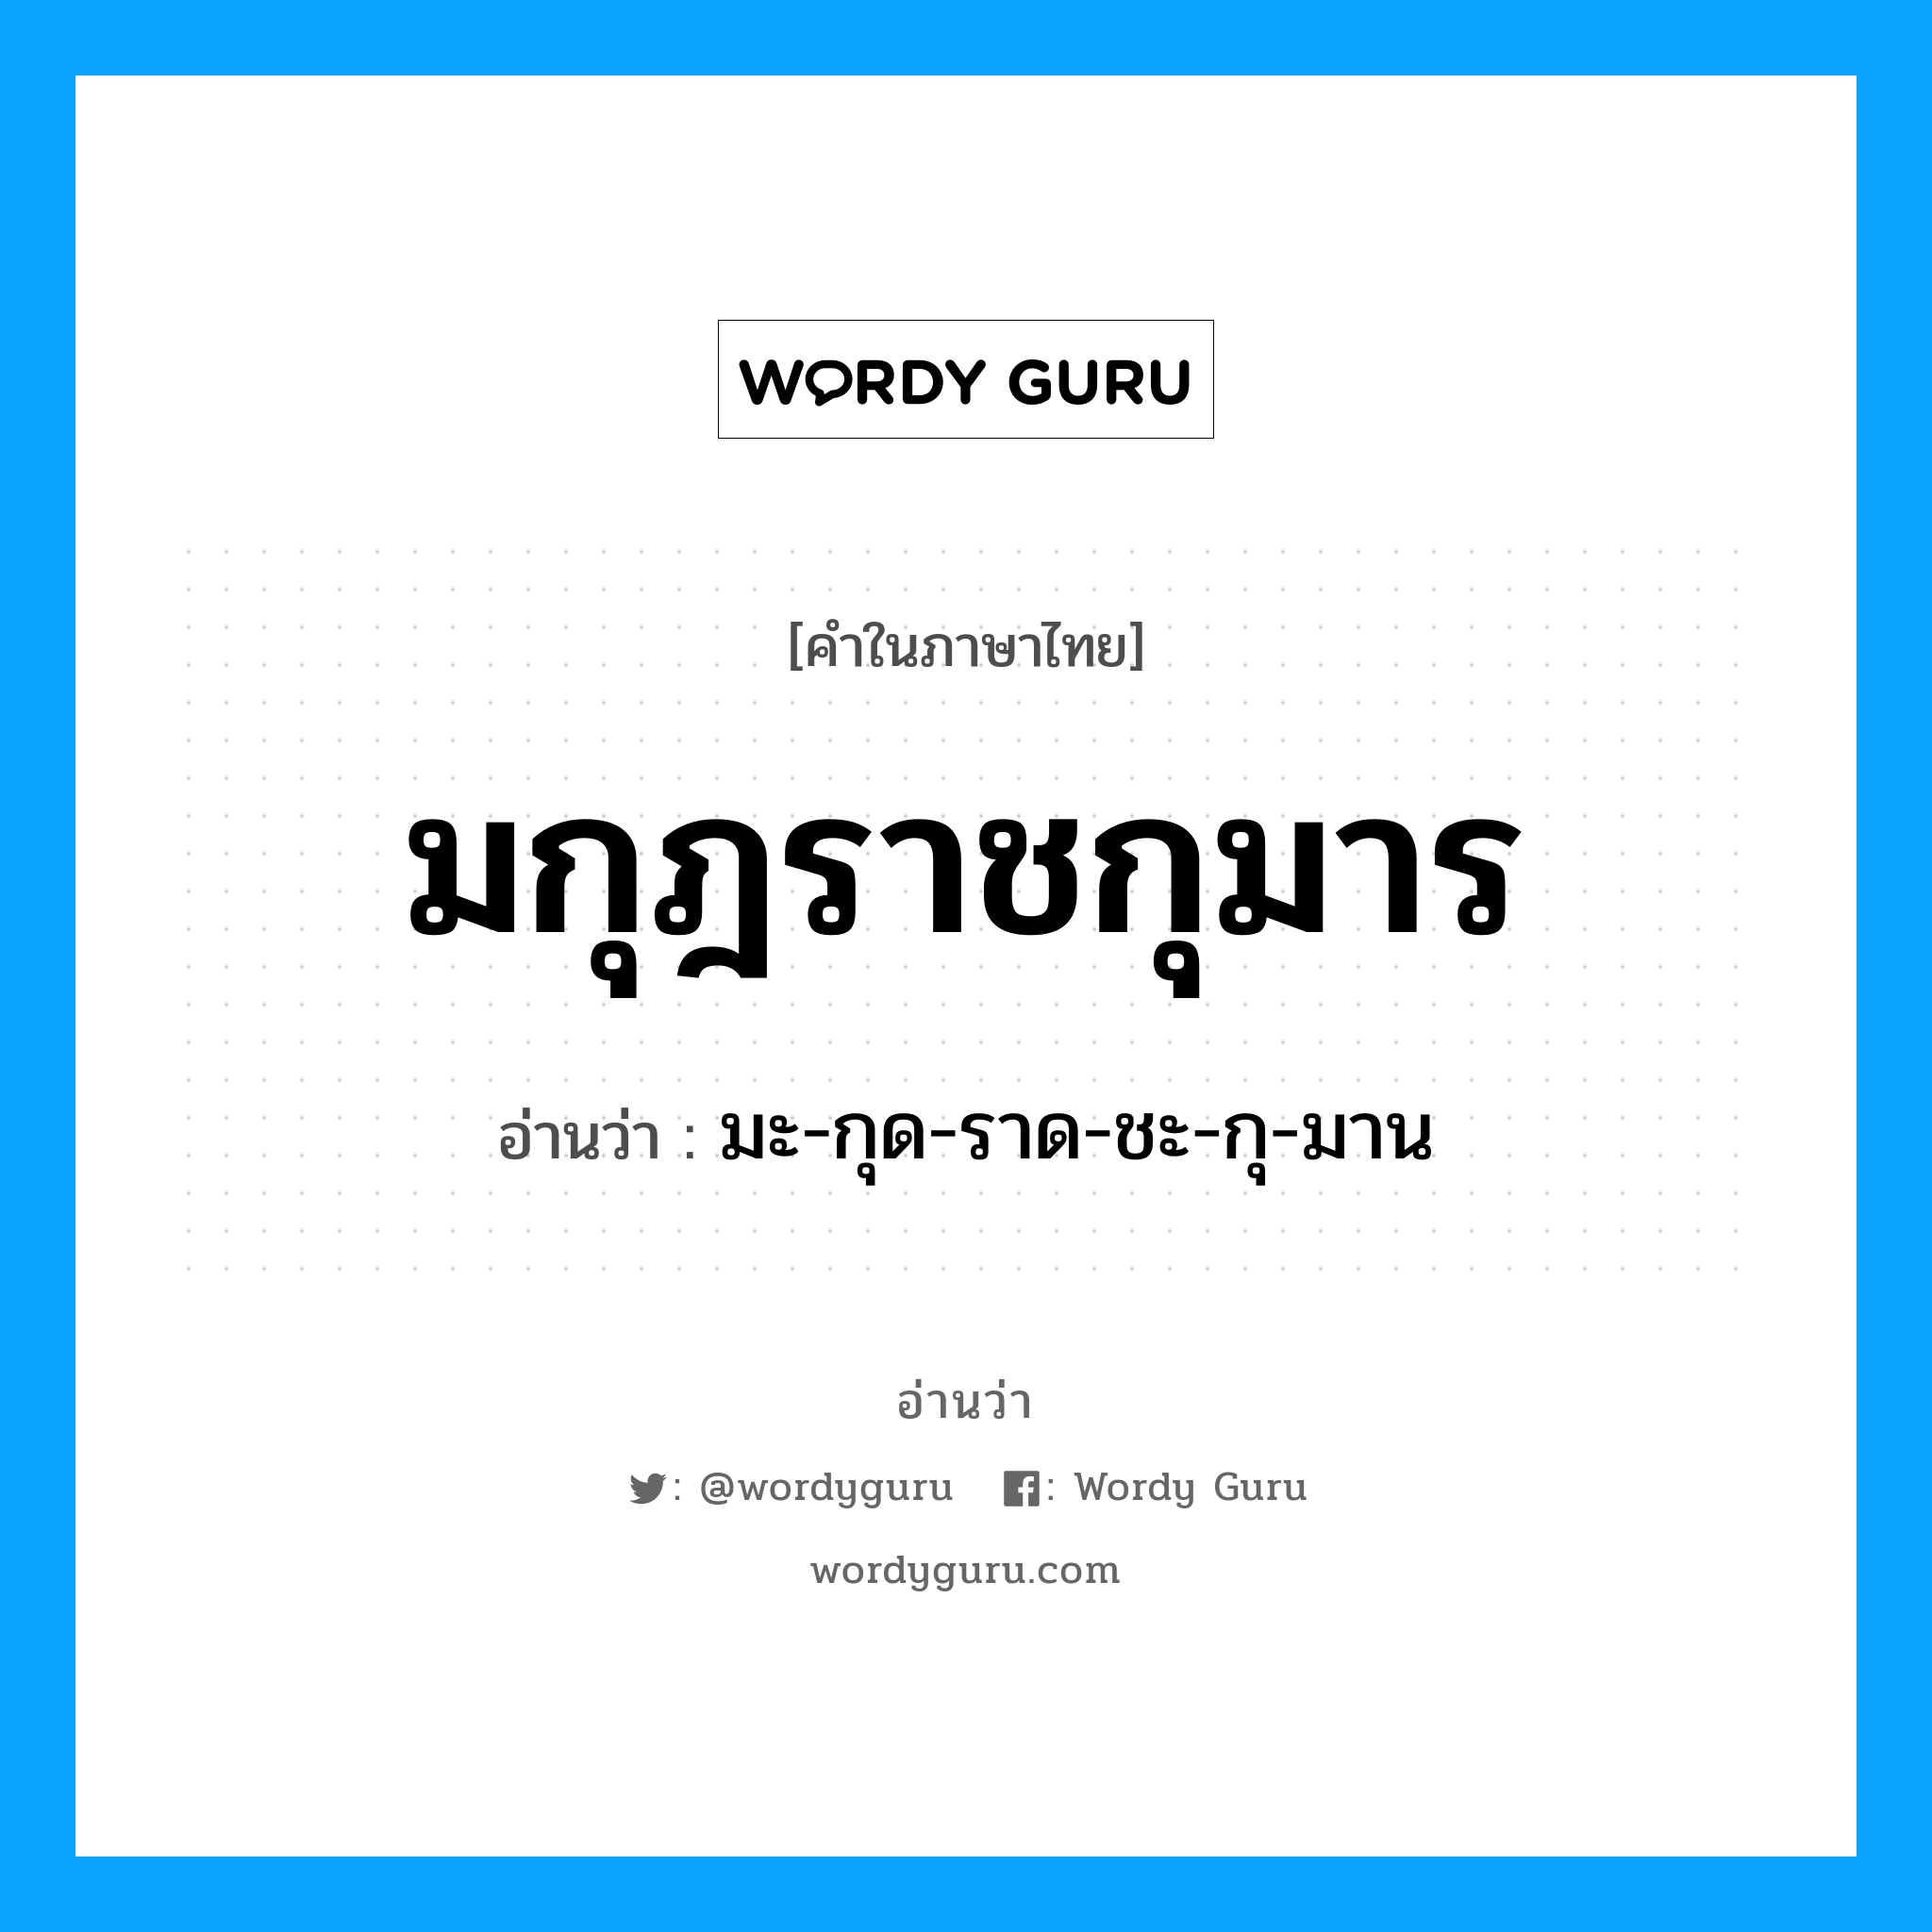 มะ-กุด-ราด-ชะ-กุ-มาน เป็นคำอ่านของคำไหน?, คำในภาษาไทย มะ-กุด-ราด-ชะ-กุ-มาน อ่านว่า มกุฎราชกุมาร